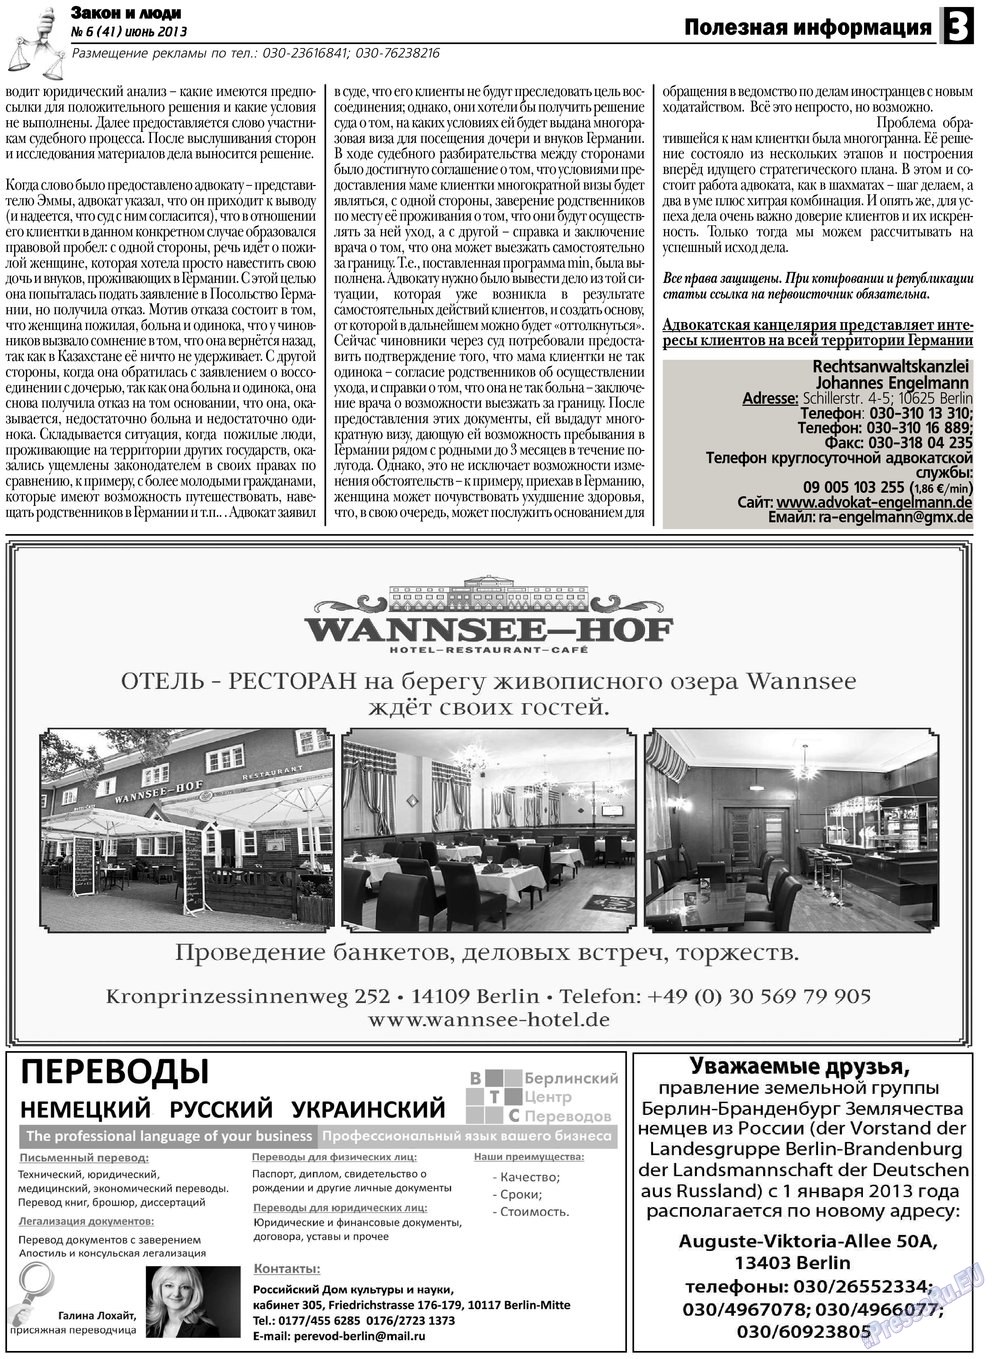 Закон и люди, газета. 2013 №6 стр.3